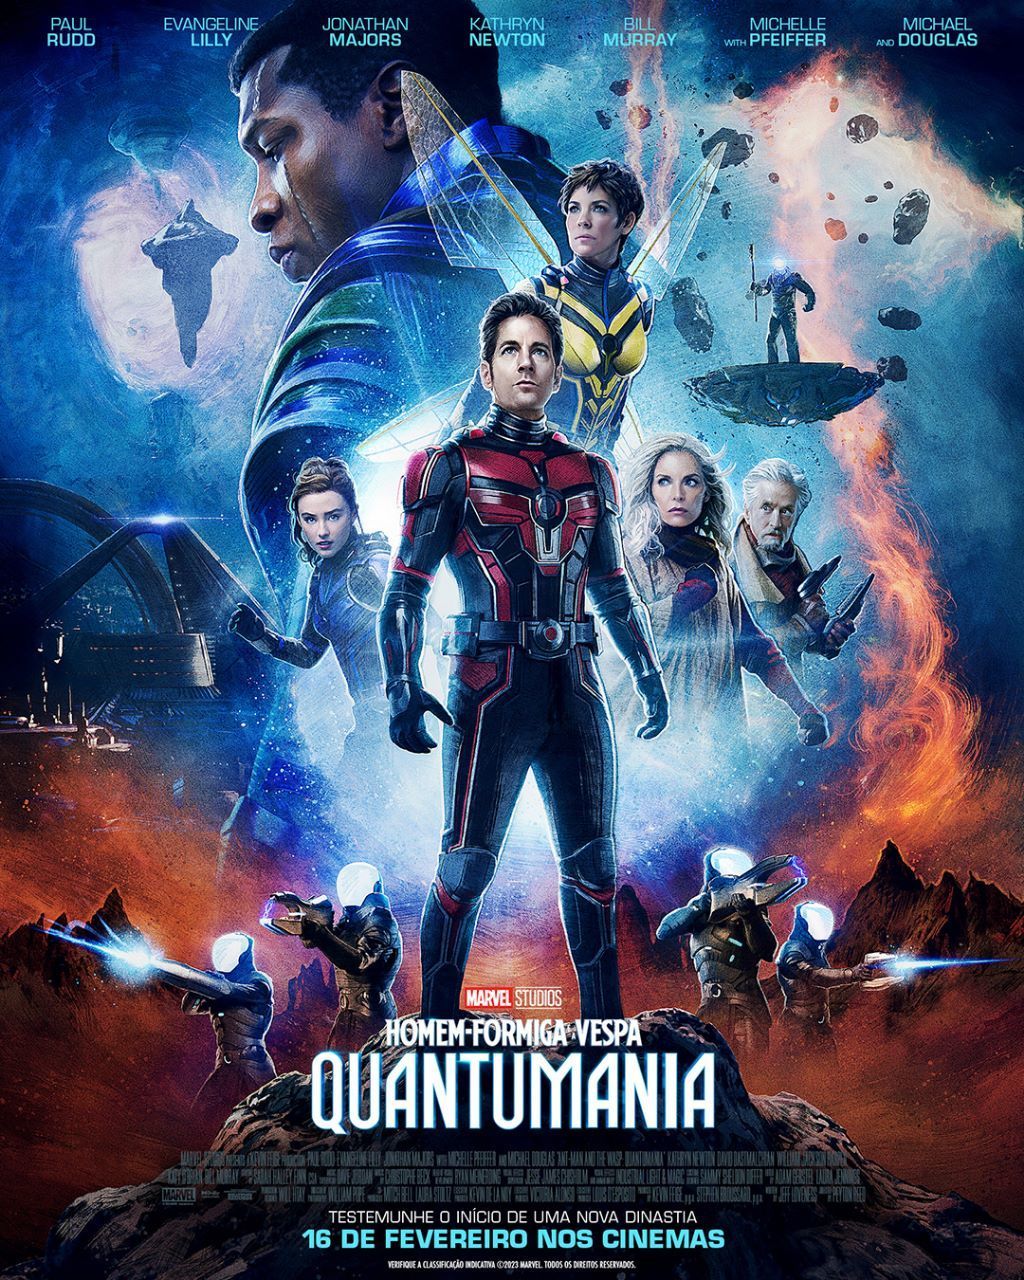 Quando estreia 'Homem-Formiga e a Vespa: Quantumania' no Disney+